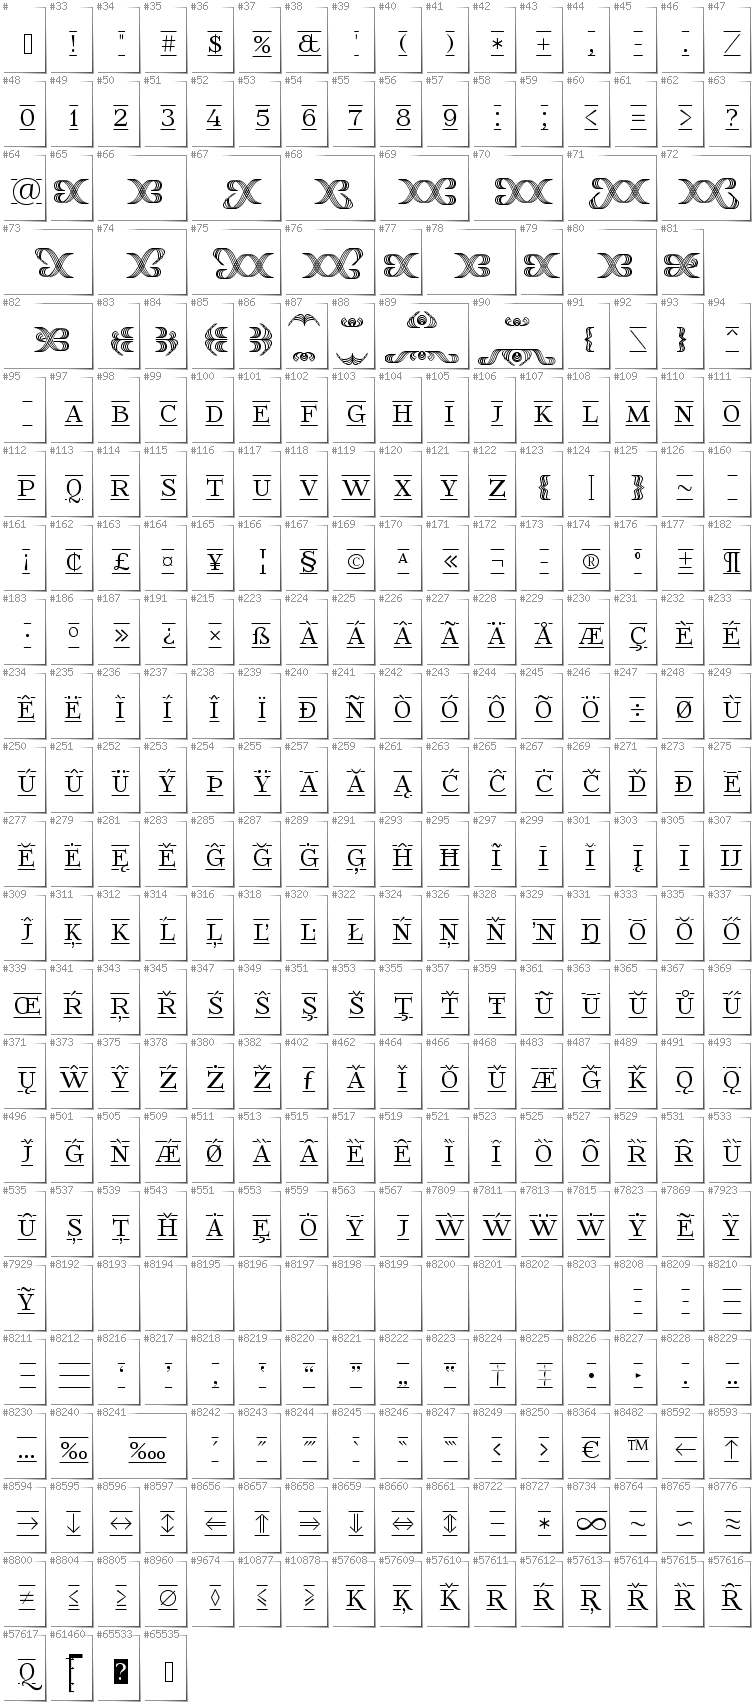 All glyphs in font FoglihtenFr02